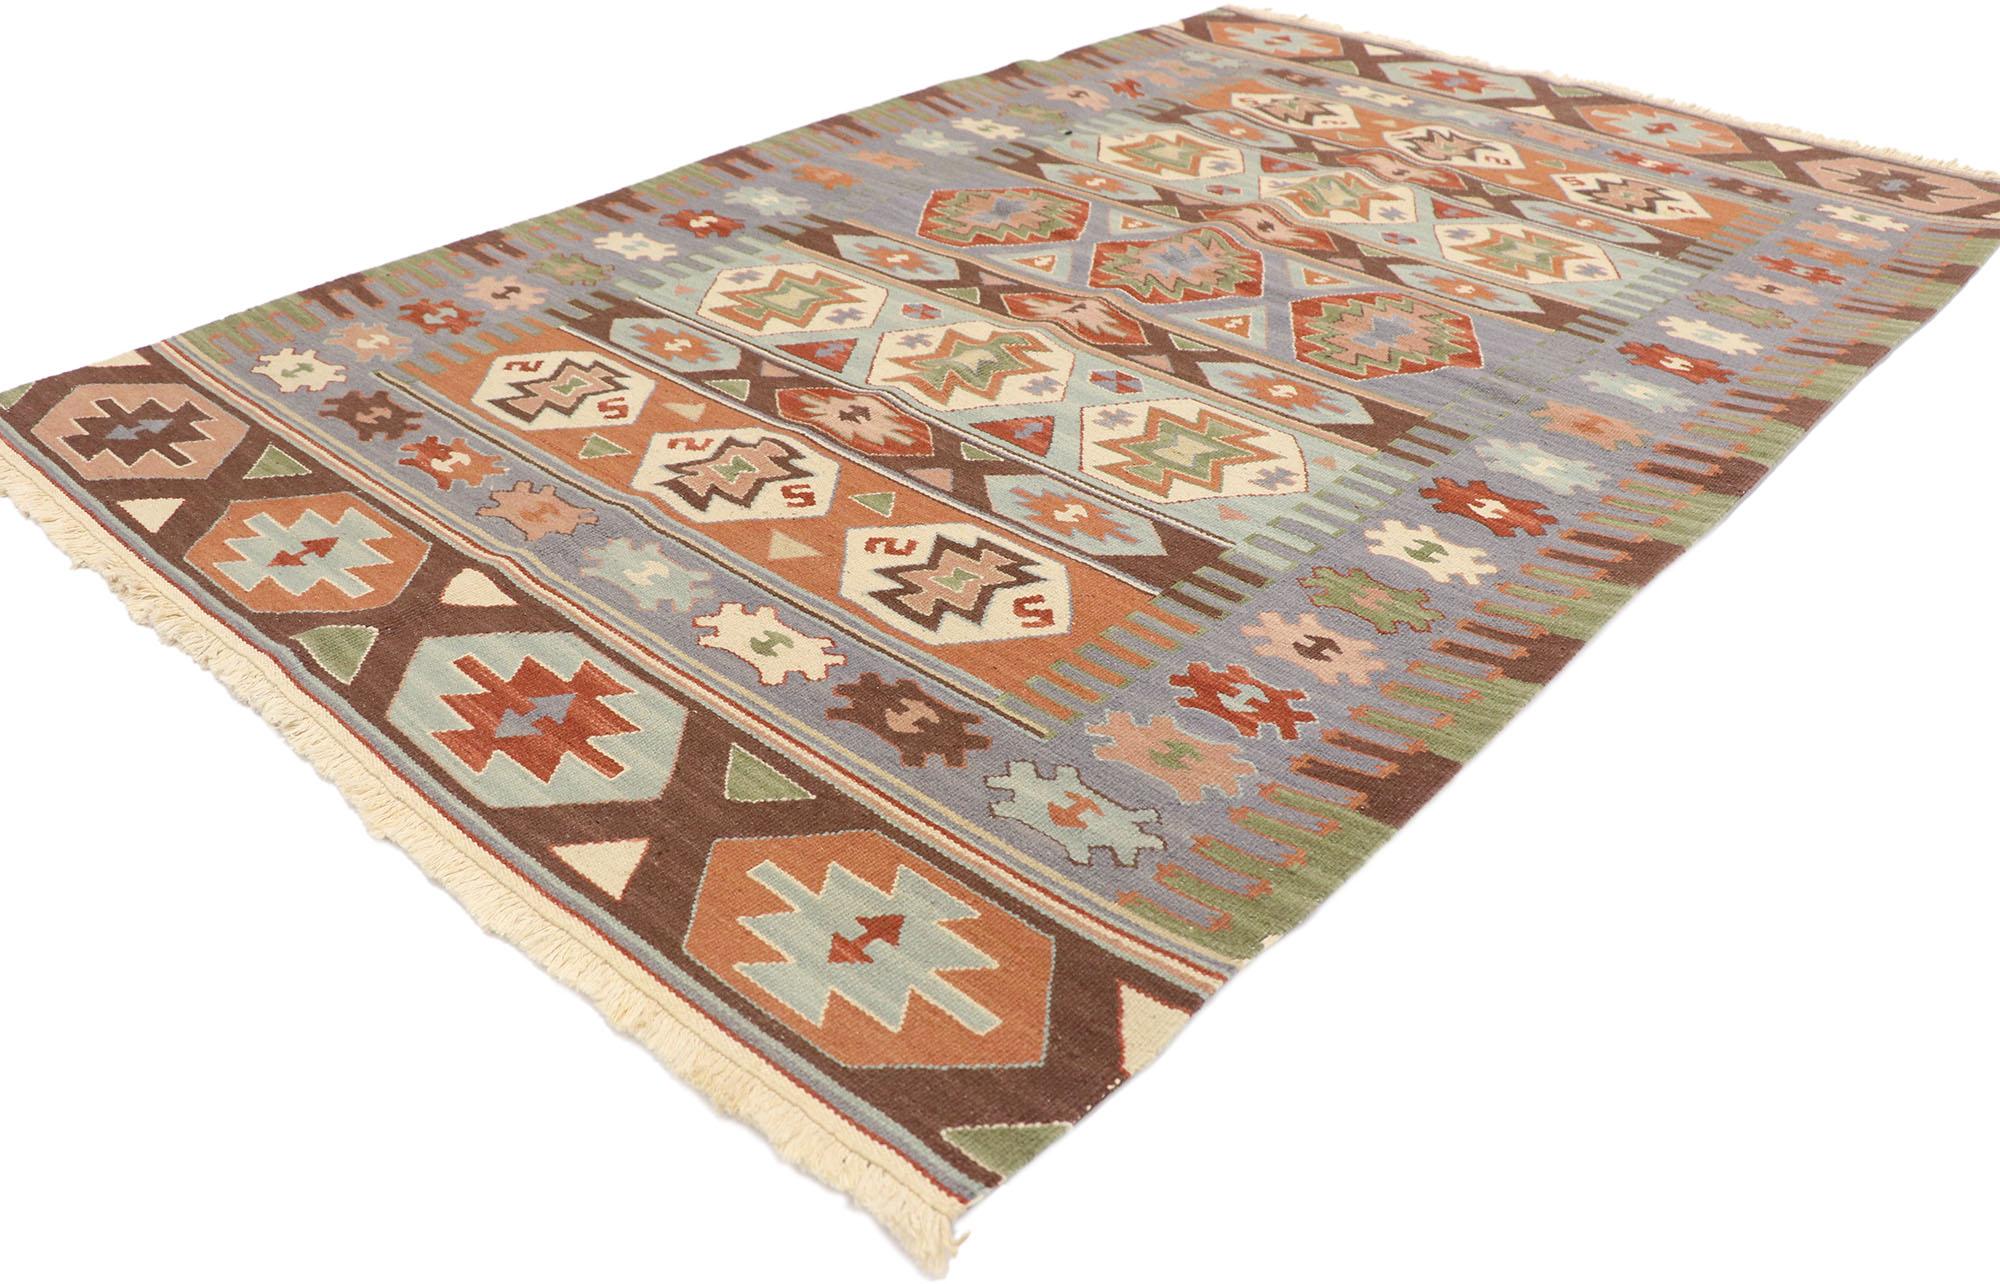 77935 Vieux tapis Persan Shiraz Kilim avec style Bohème Tribal 03'08 x 05'07. Plein de petits détails et un design expressif audacieux combiné avec des couleurs vibrantes et un style tribal, ce tapis kilim persan vintage en laine tissé à la main est